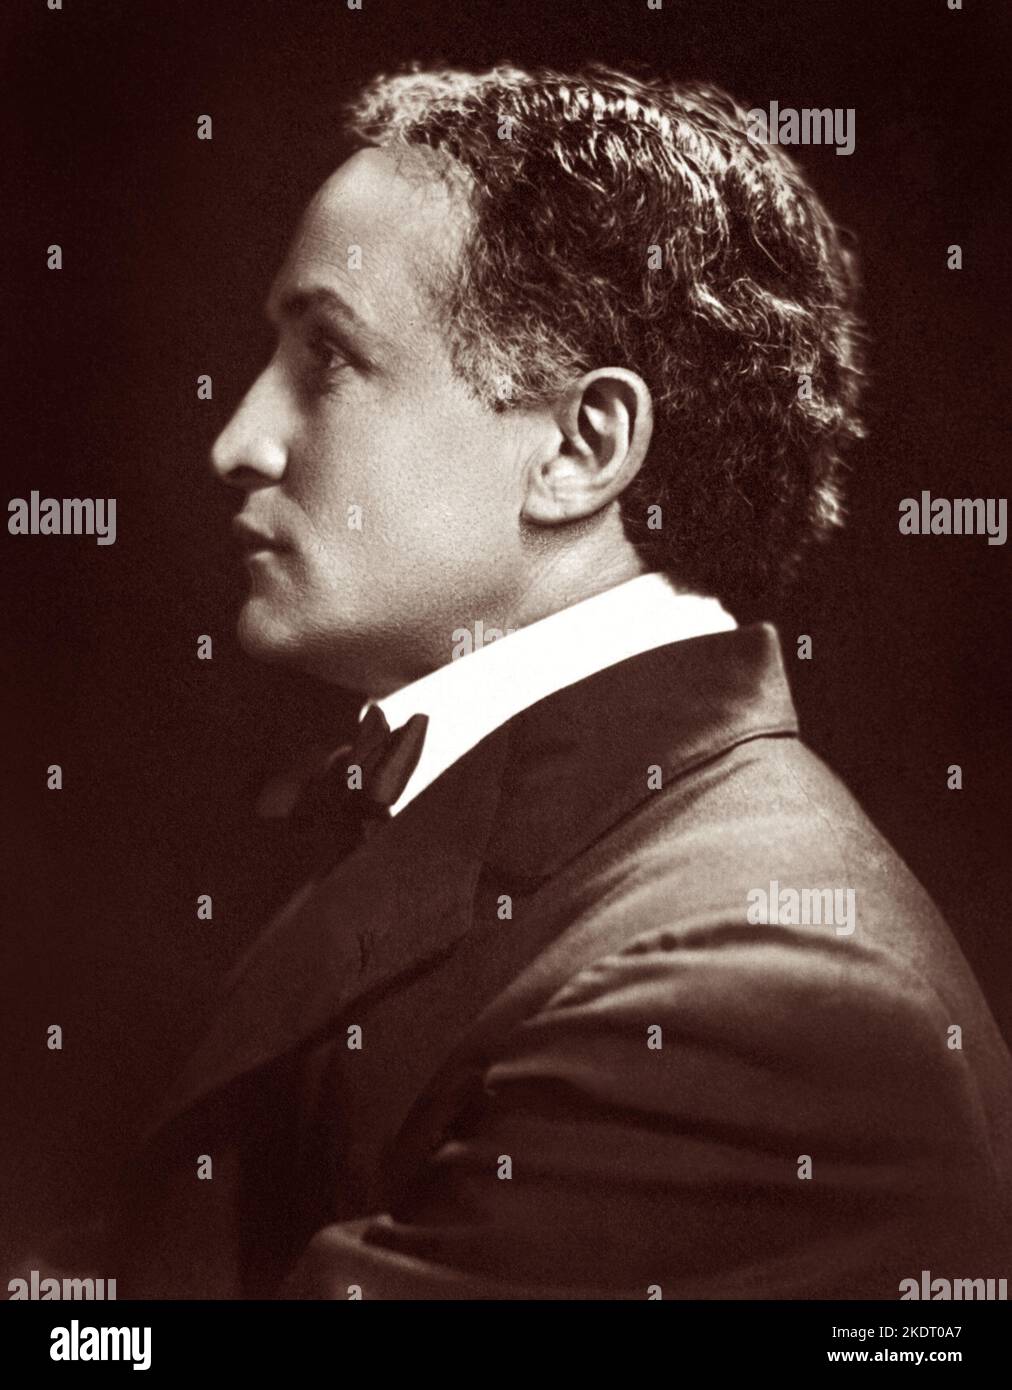 Harry Houdini (1874-1926), Hungarian-American illusionist and escape artist, in a profile portrait, c1920. Stock Photo